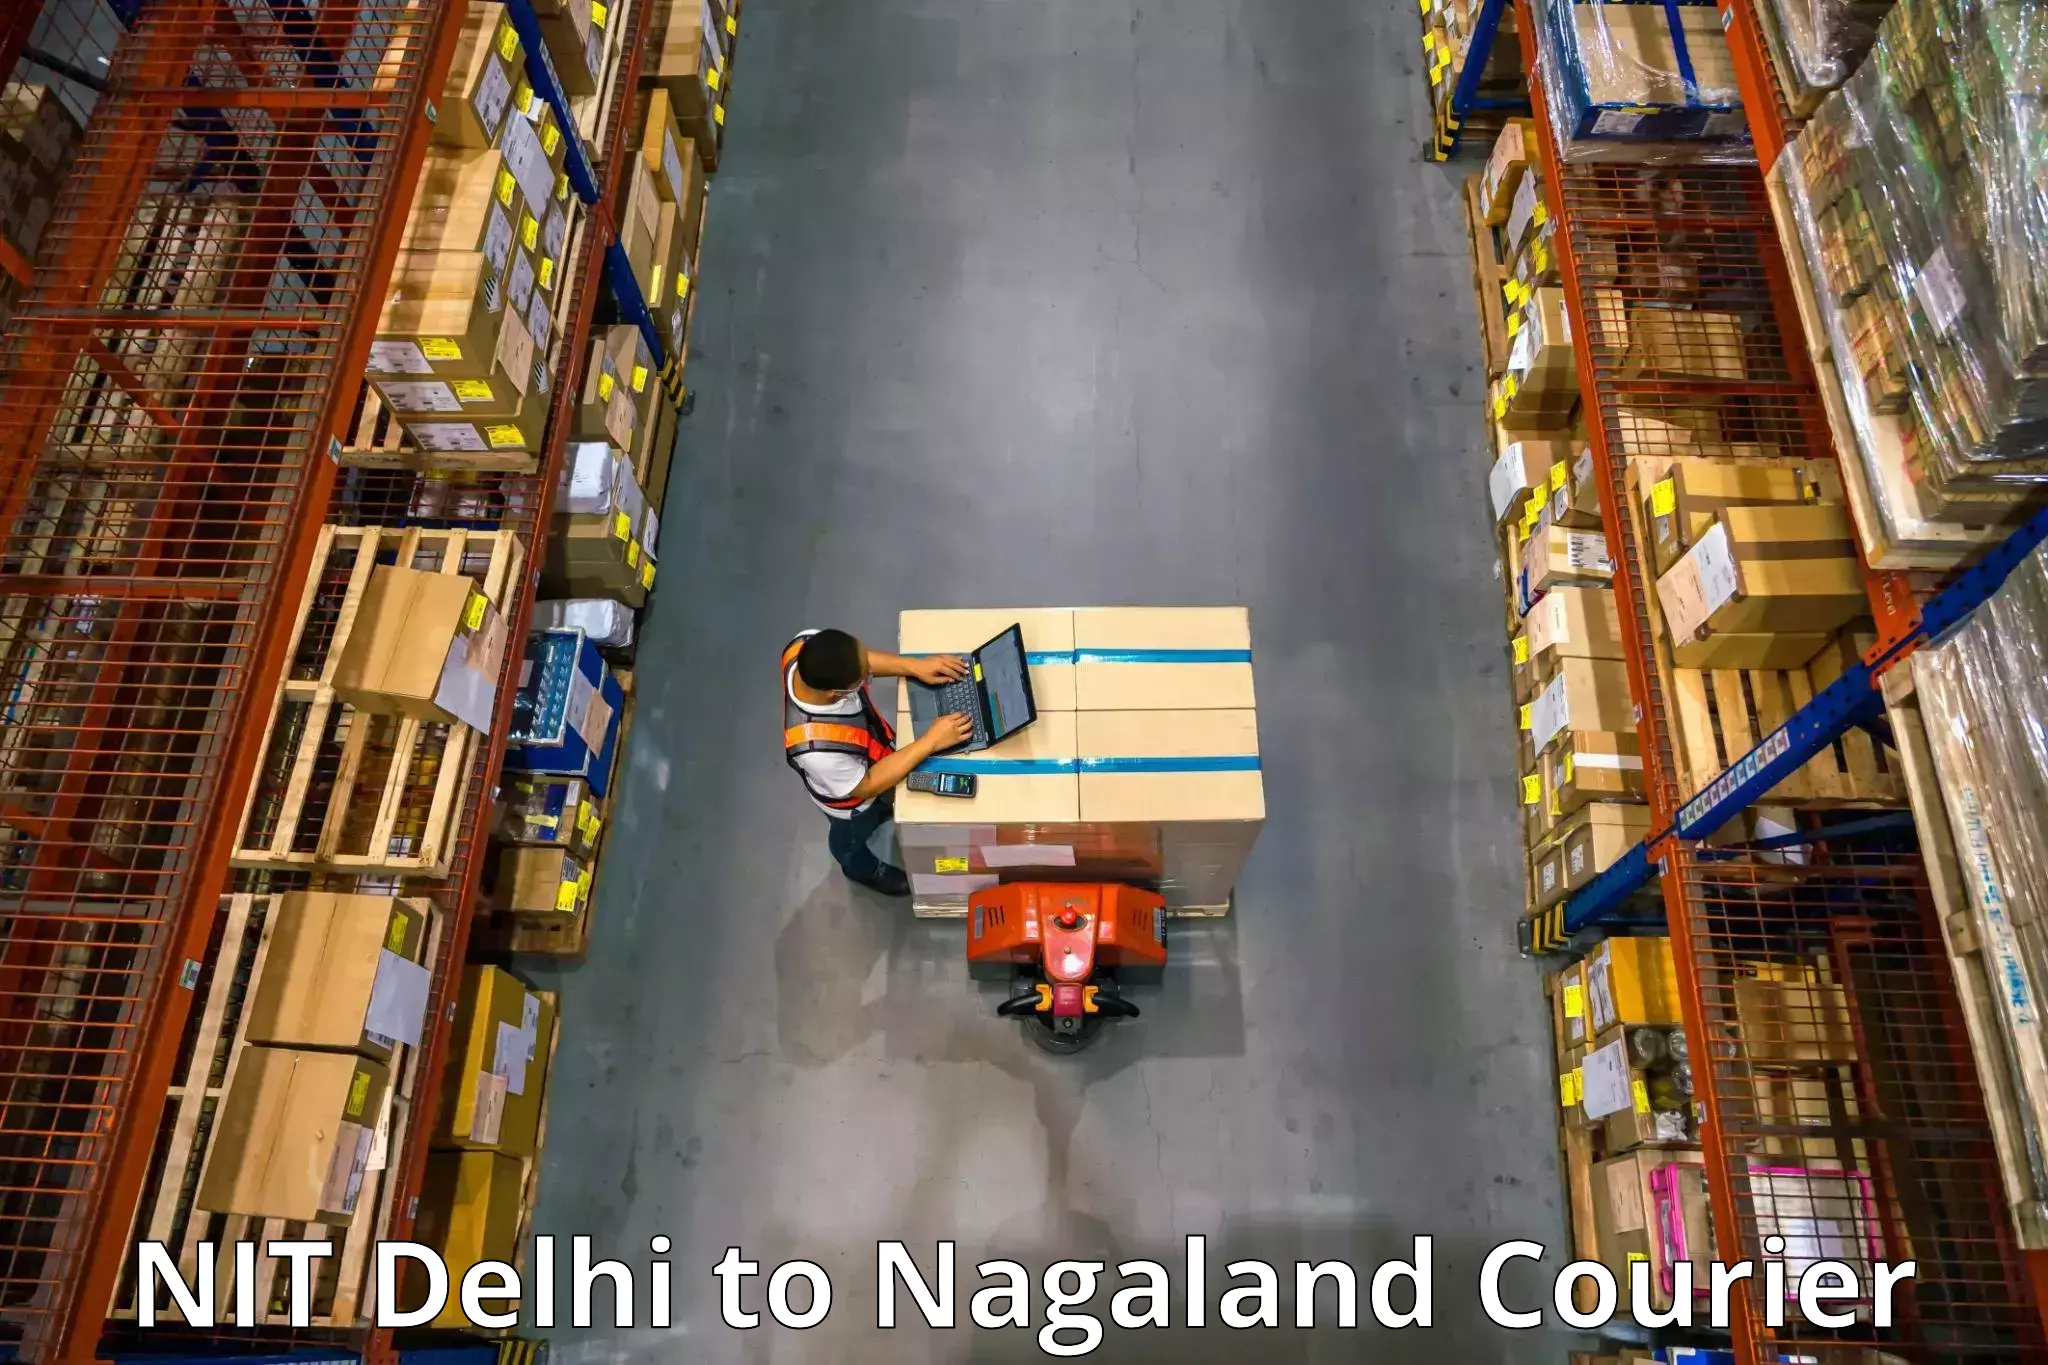 Home furniture shifting NIT Delhi to NIT Nagaland